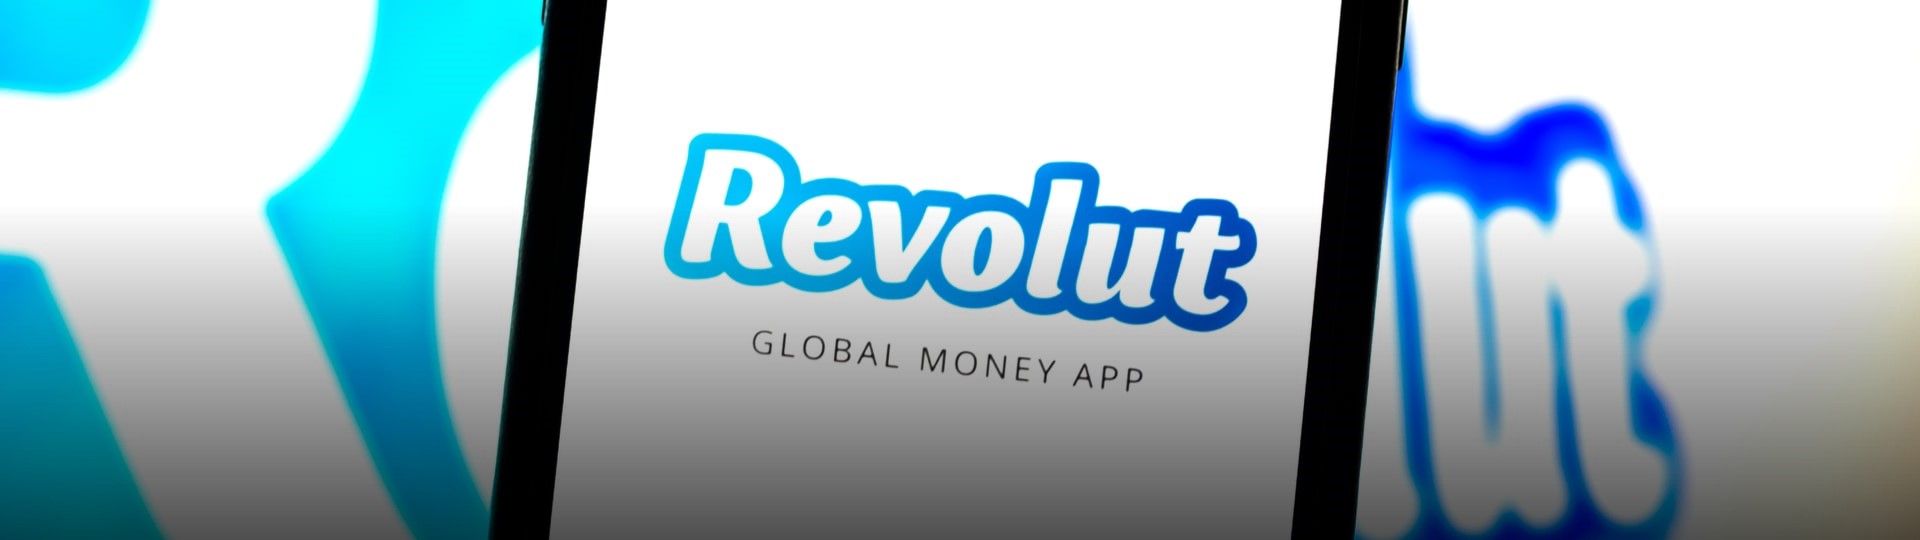 Revolut získal od investorů 800 mil. USD, start-up byl ohodnocen na 33 mld. USD